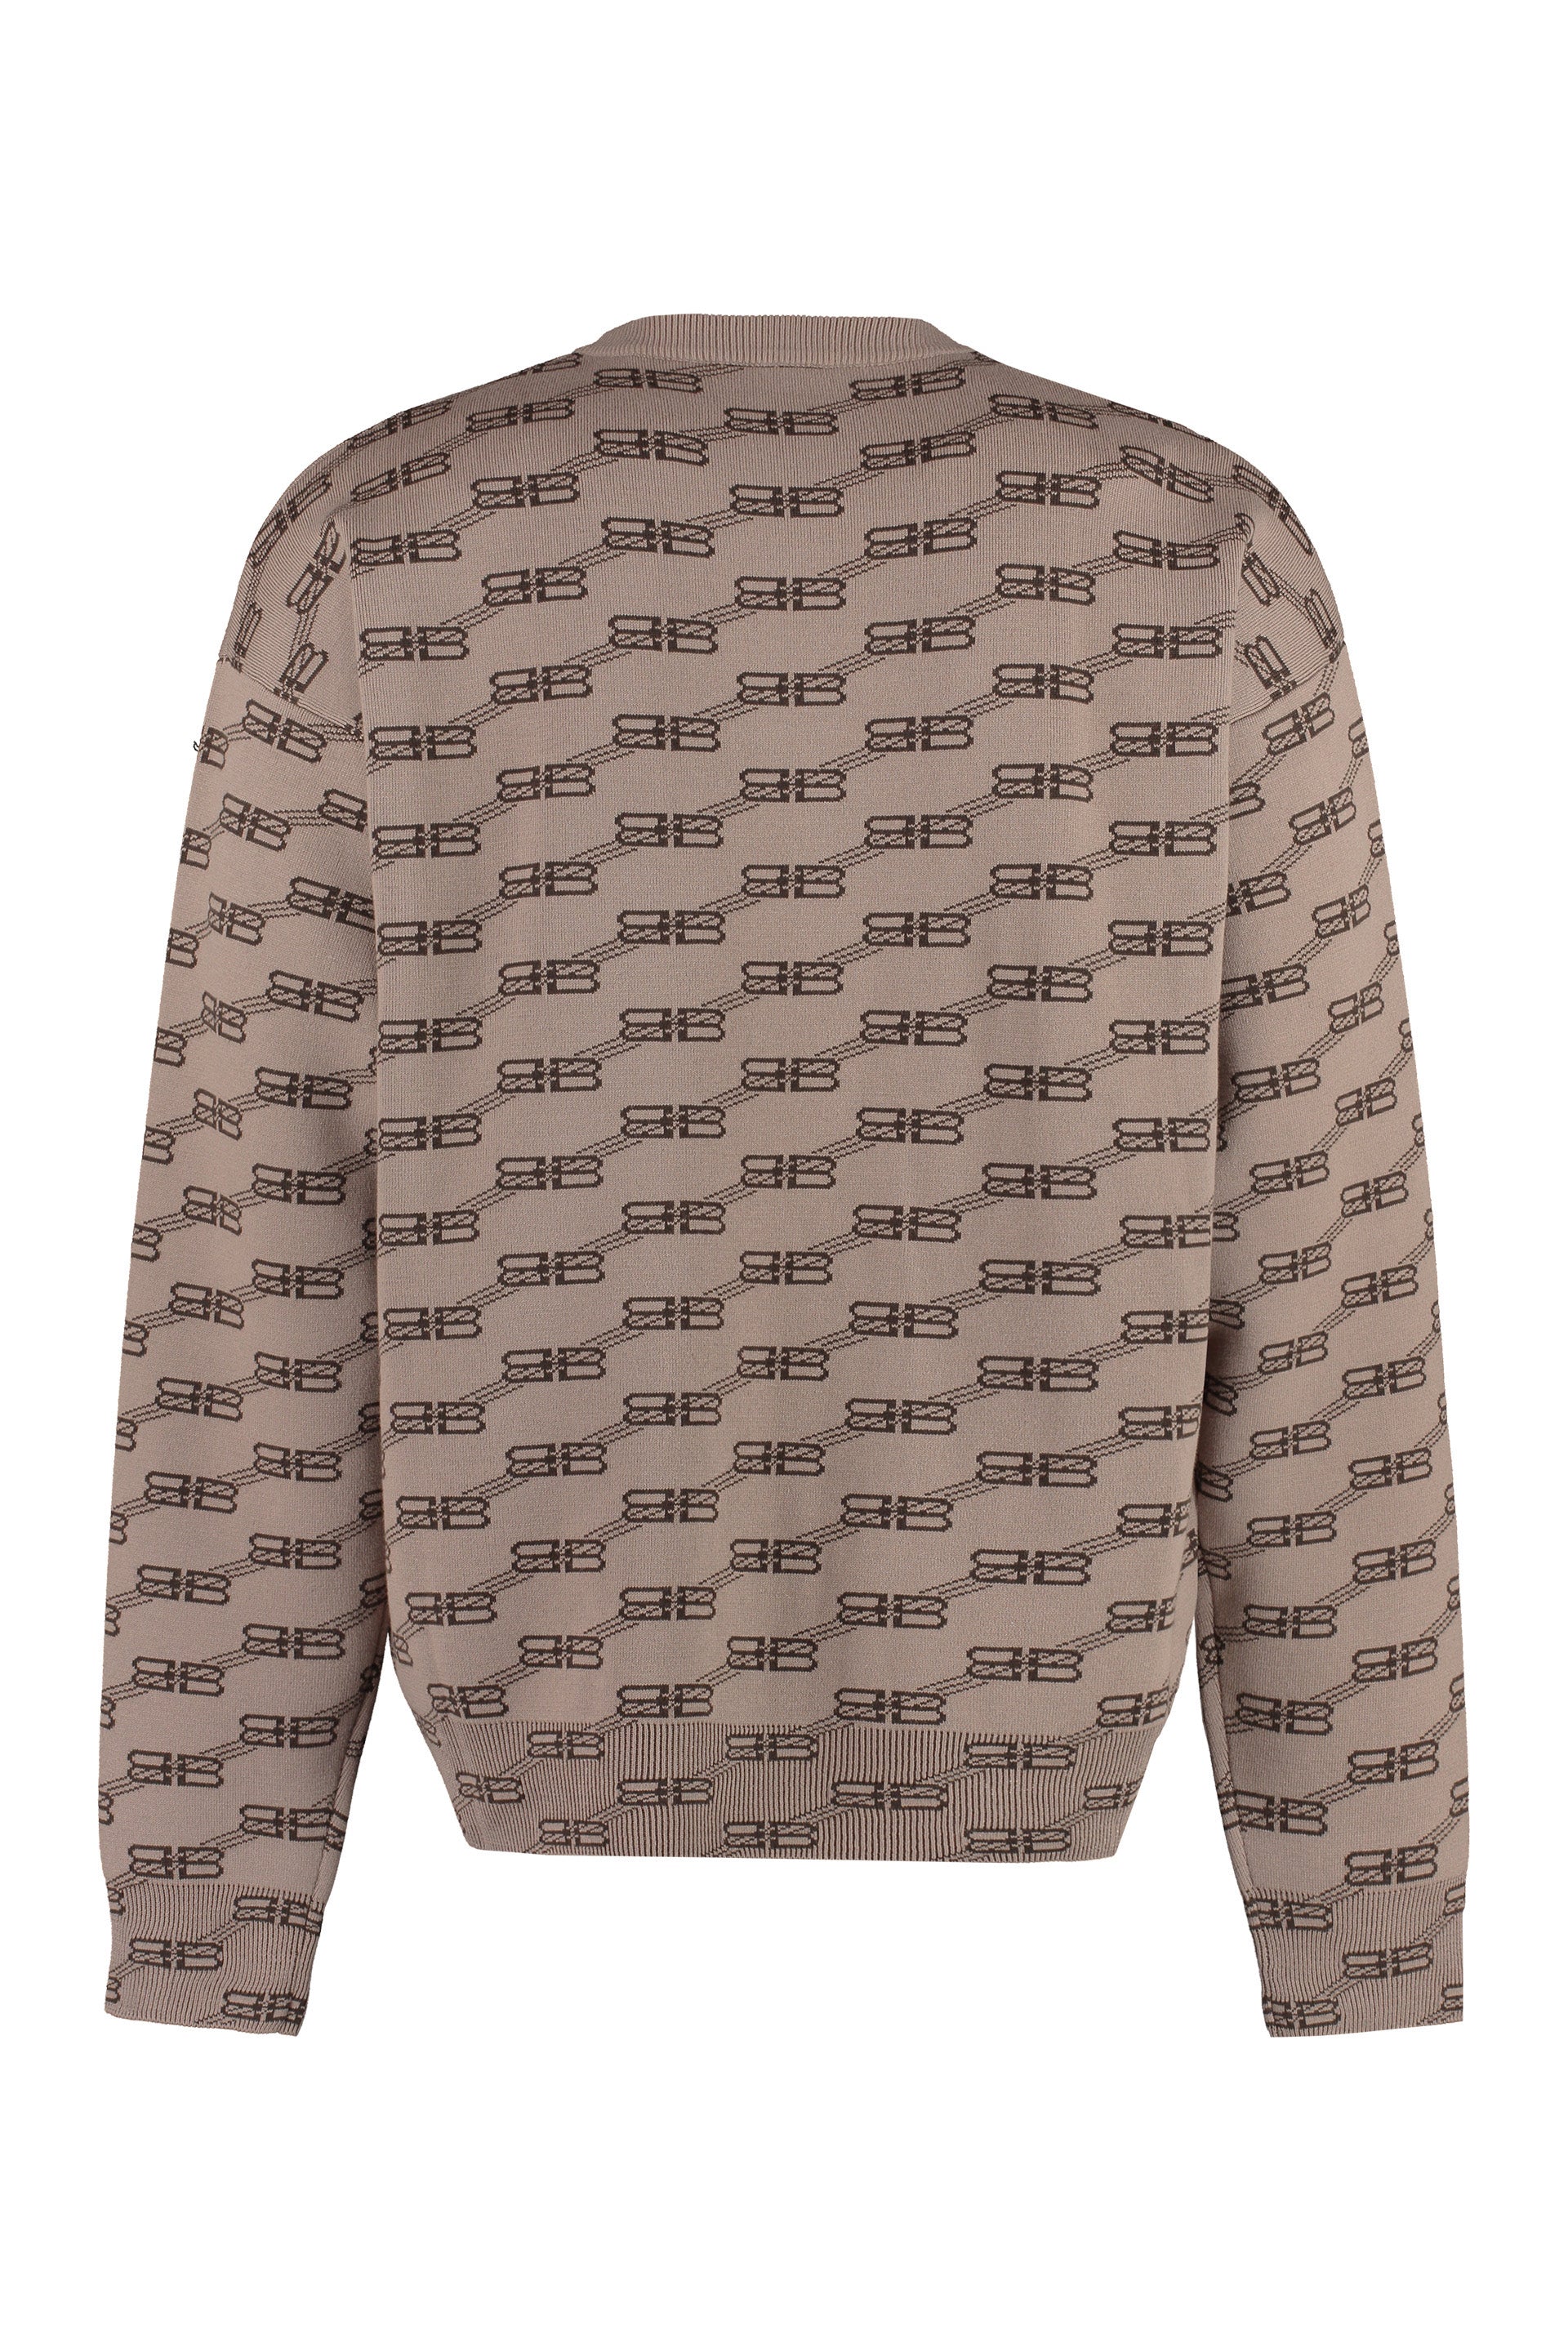 Shop Balenciaga Men's Long Sleeve Brown Crew-neck Sweater For Ss23